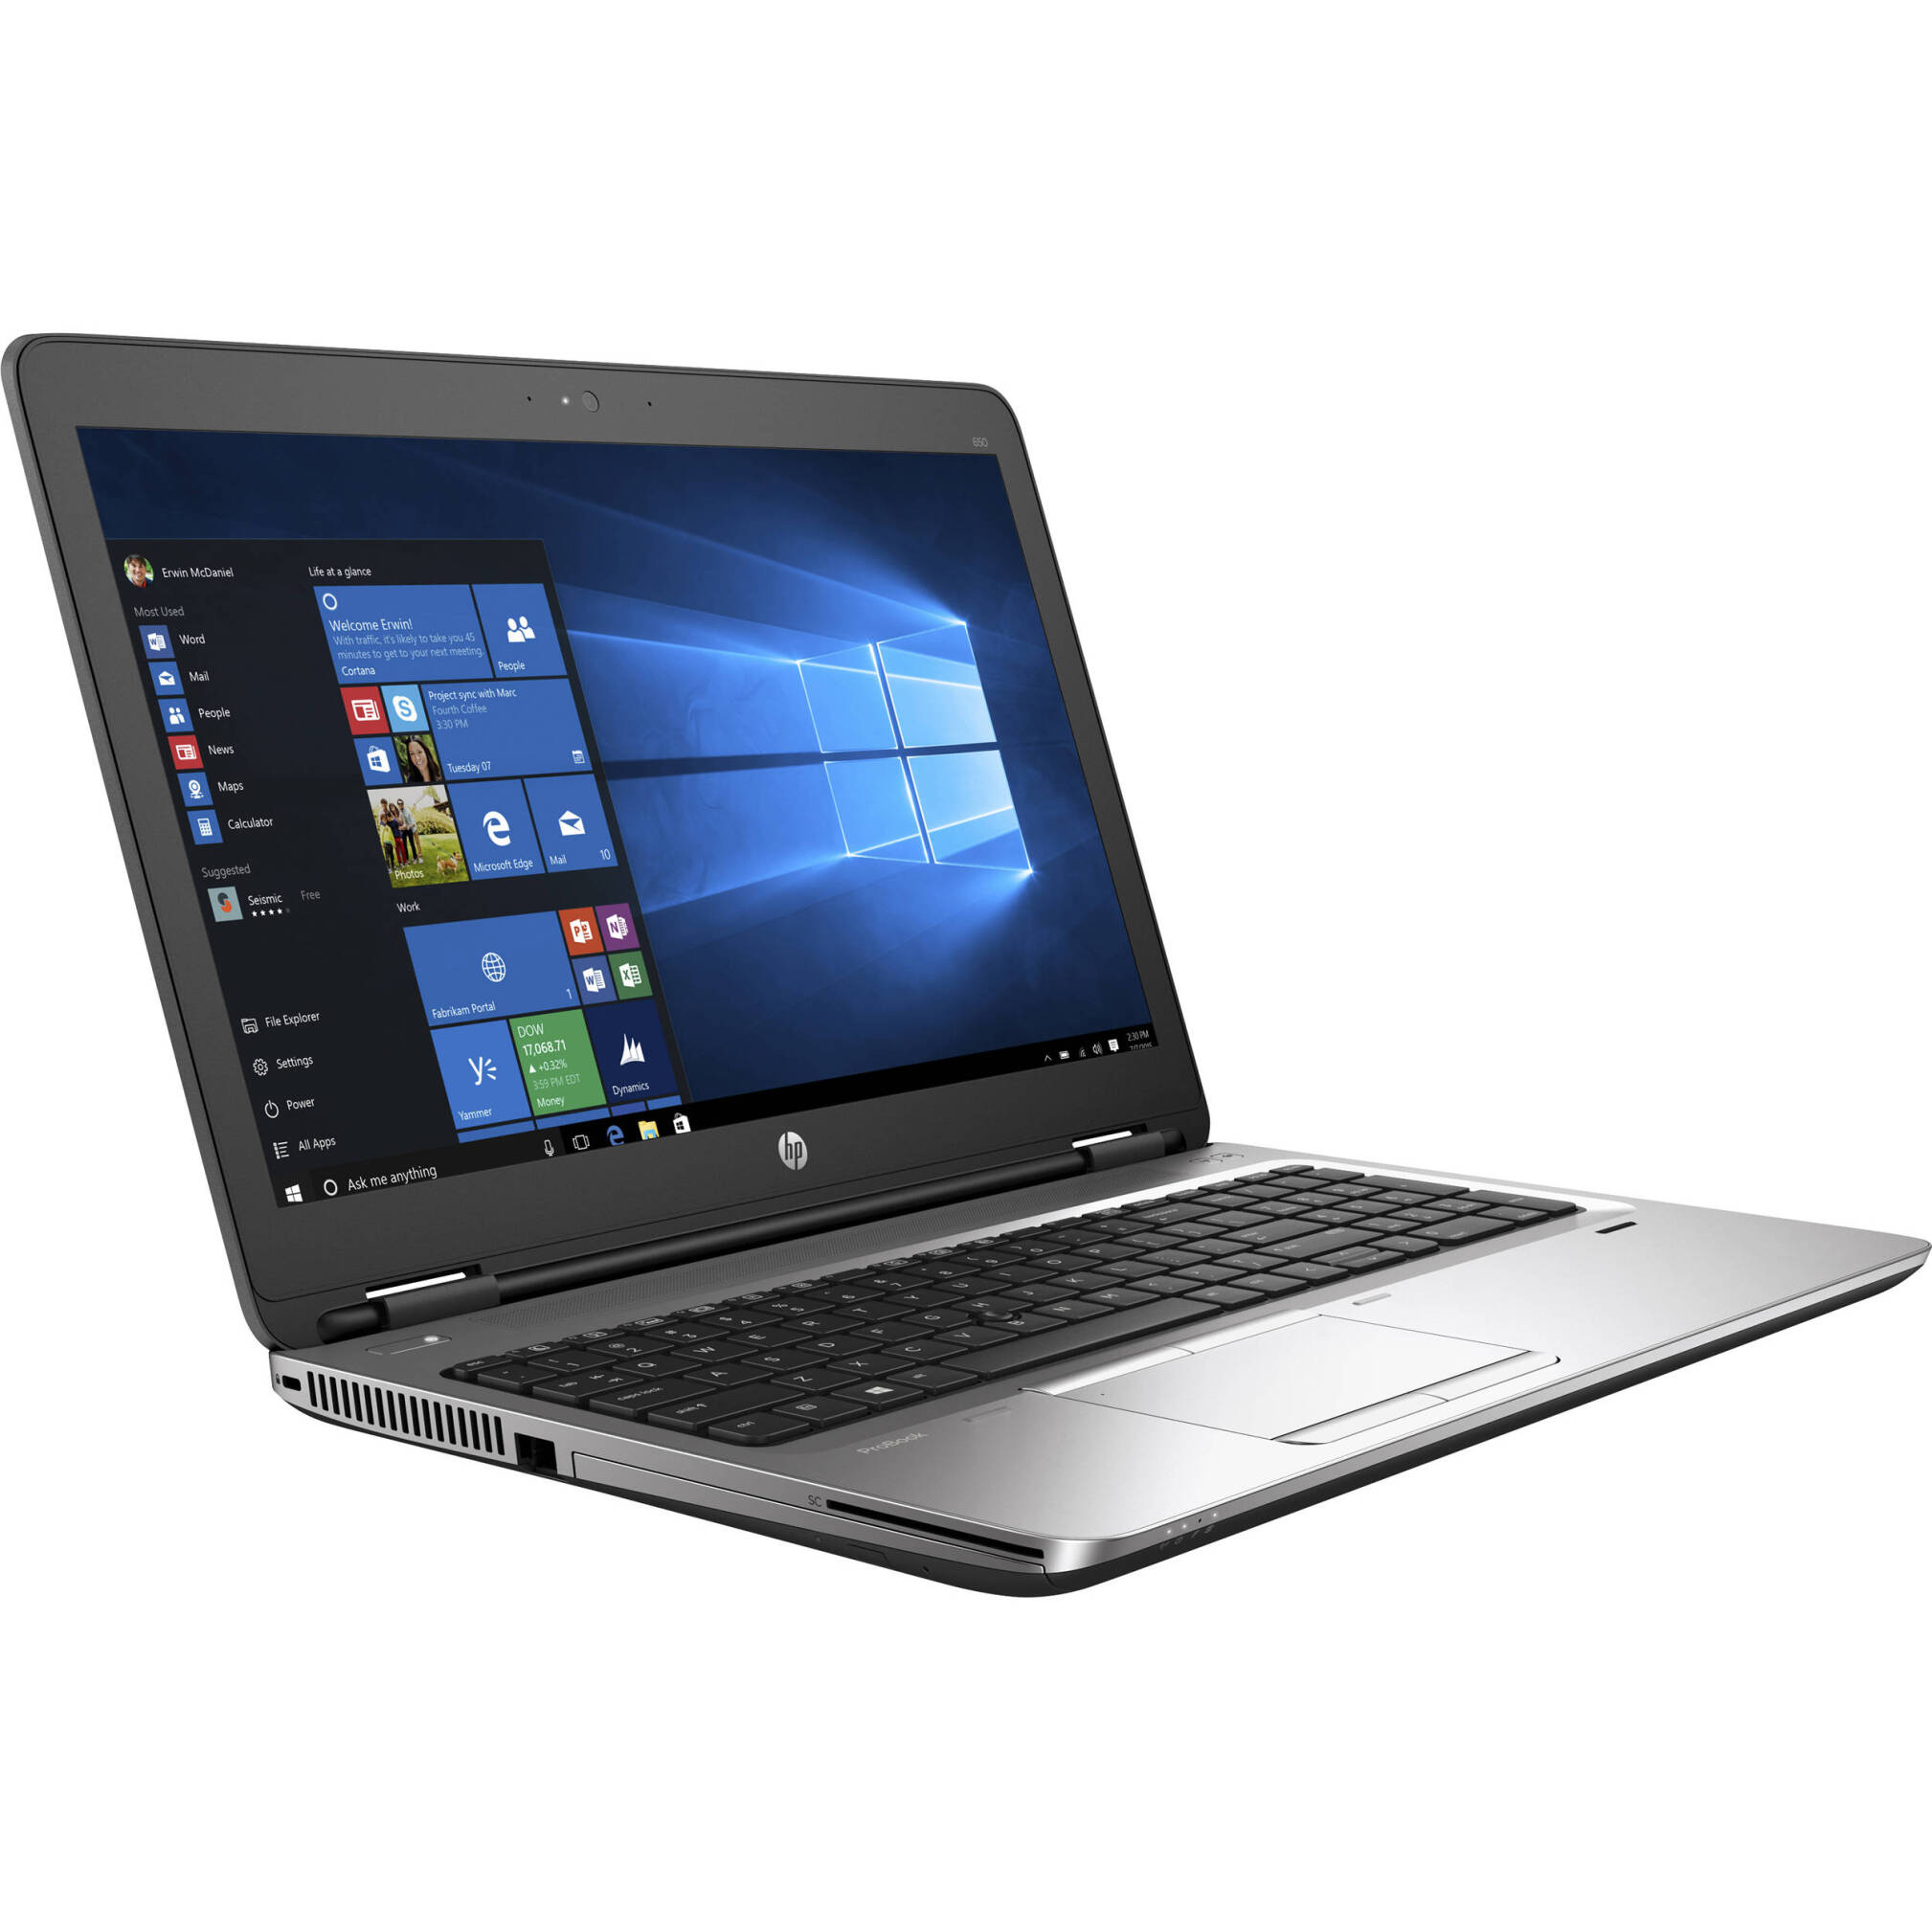  لپ تاپ استوک HP ProBook 650 G1|خرید لپ تاپ استوک اروپایی HP ProBook 650 G1 بدون گرفیک intel HD پردازنده نسل چهارم با هار 